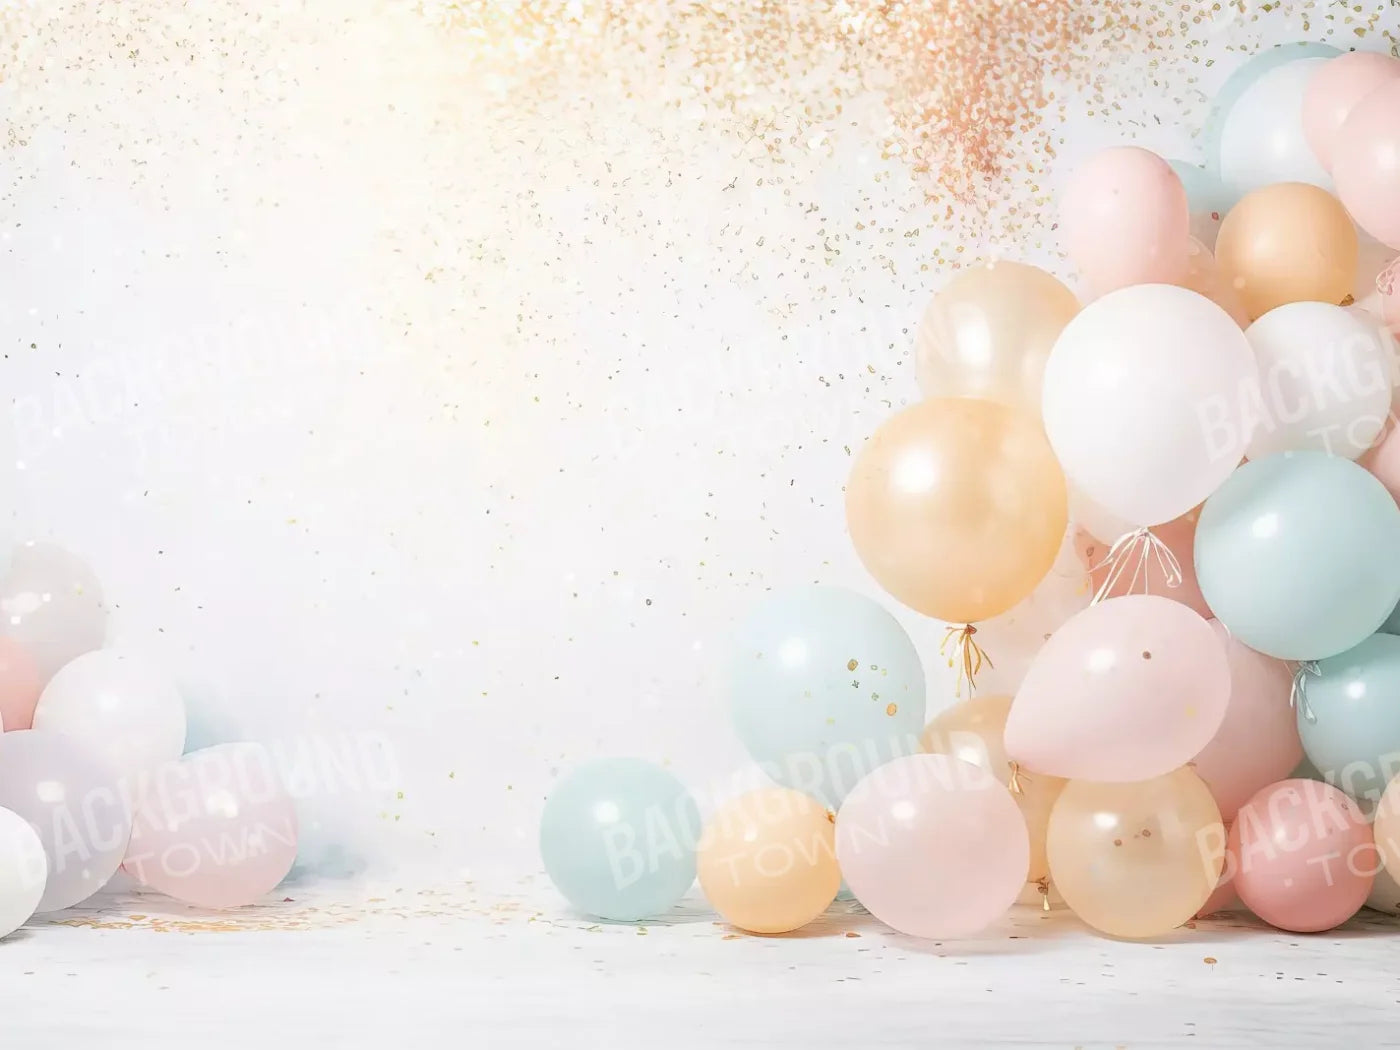 Fancy Party Balloons Ii 6’8X5’ Fleece (80 X 60 Inch) Backdrop